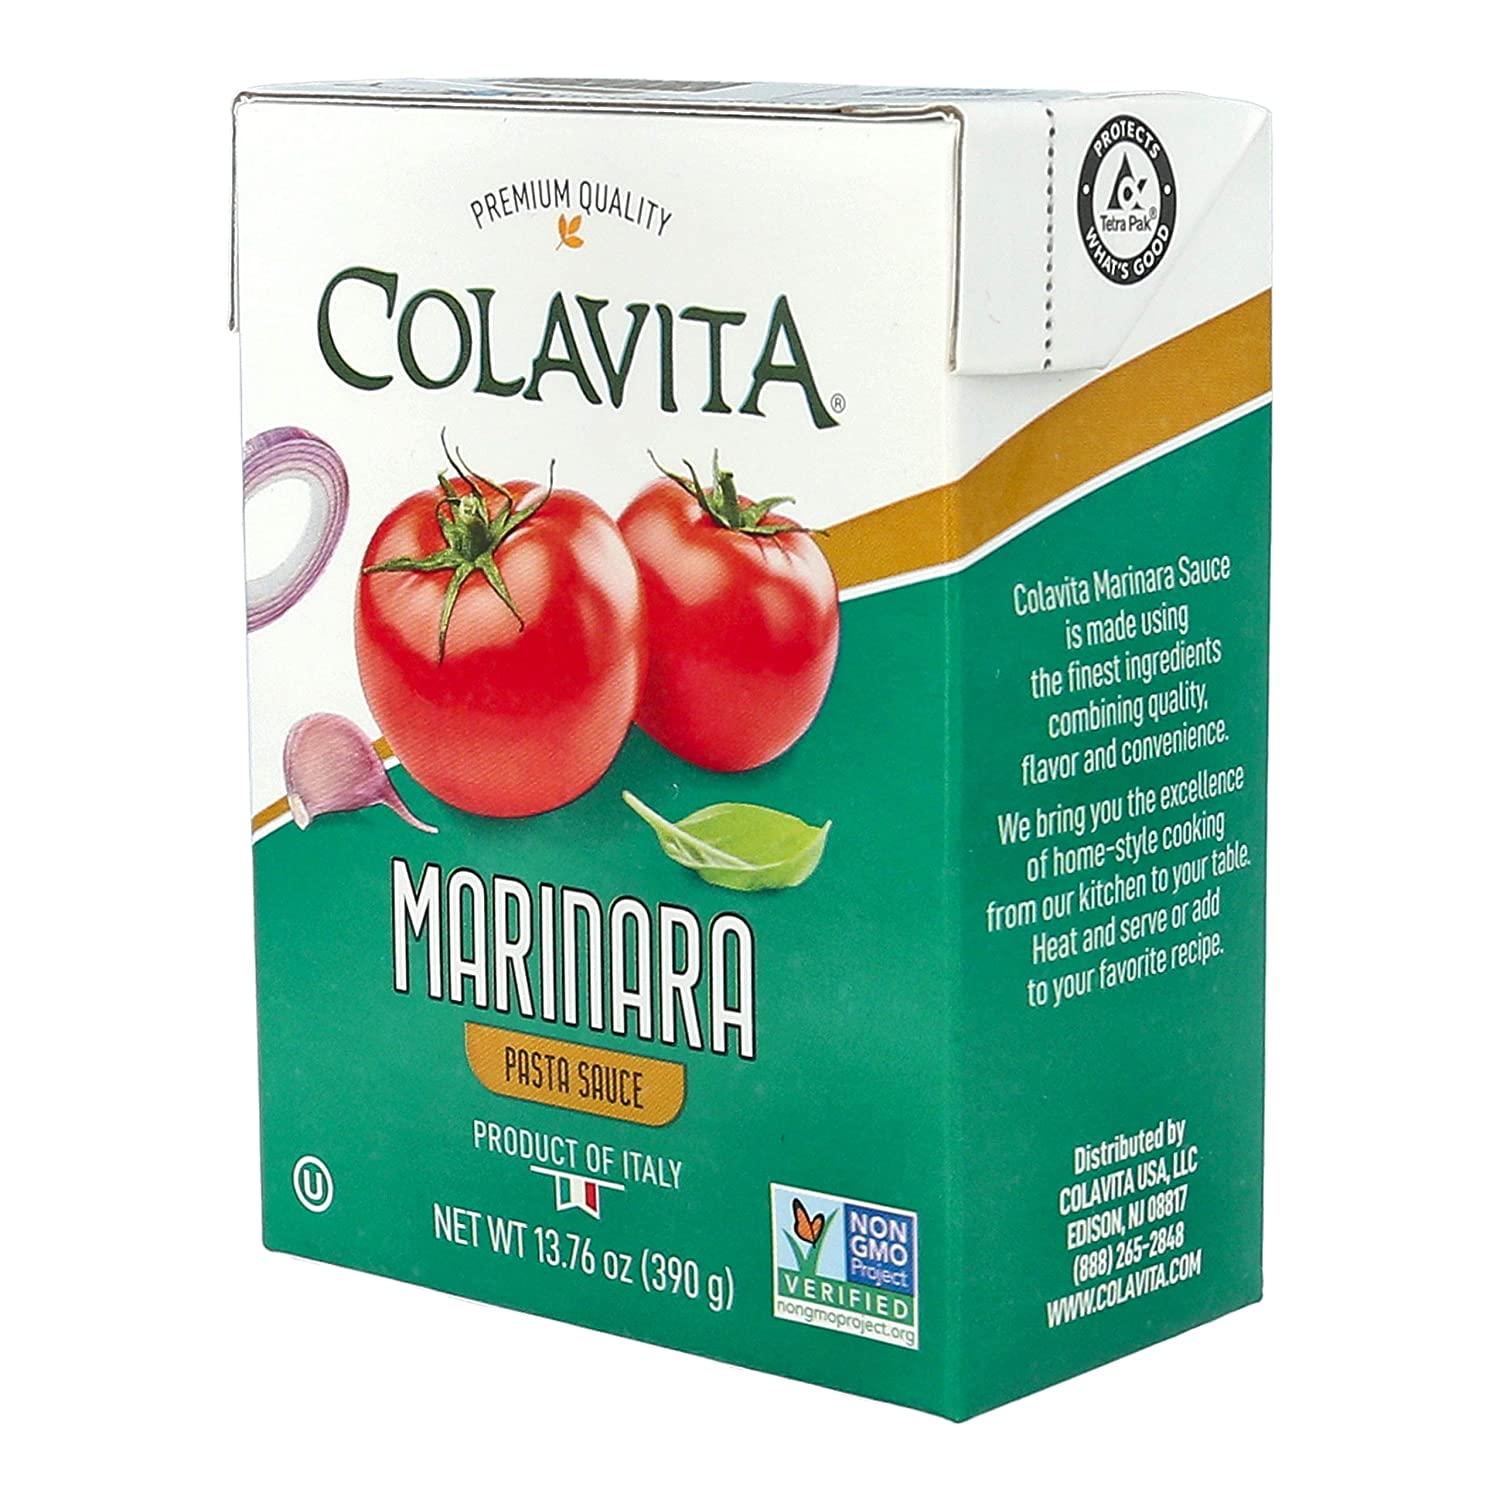 Colavita Organic Marinara Sauce, 25 Ounce 